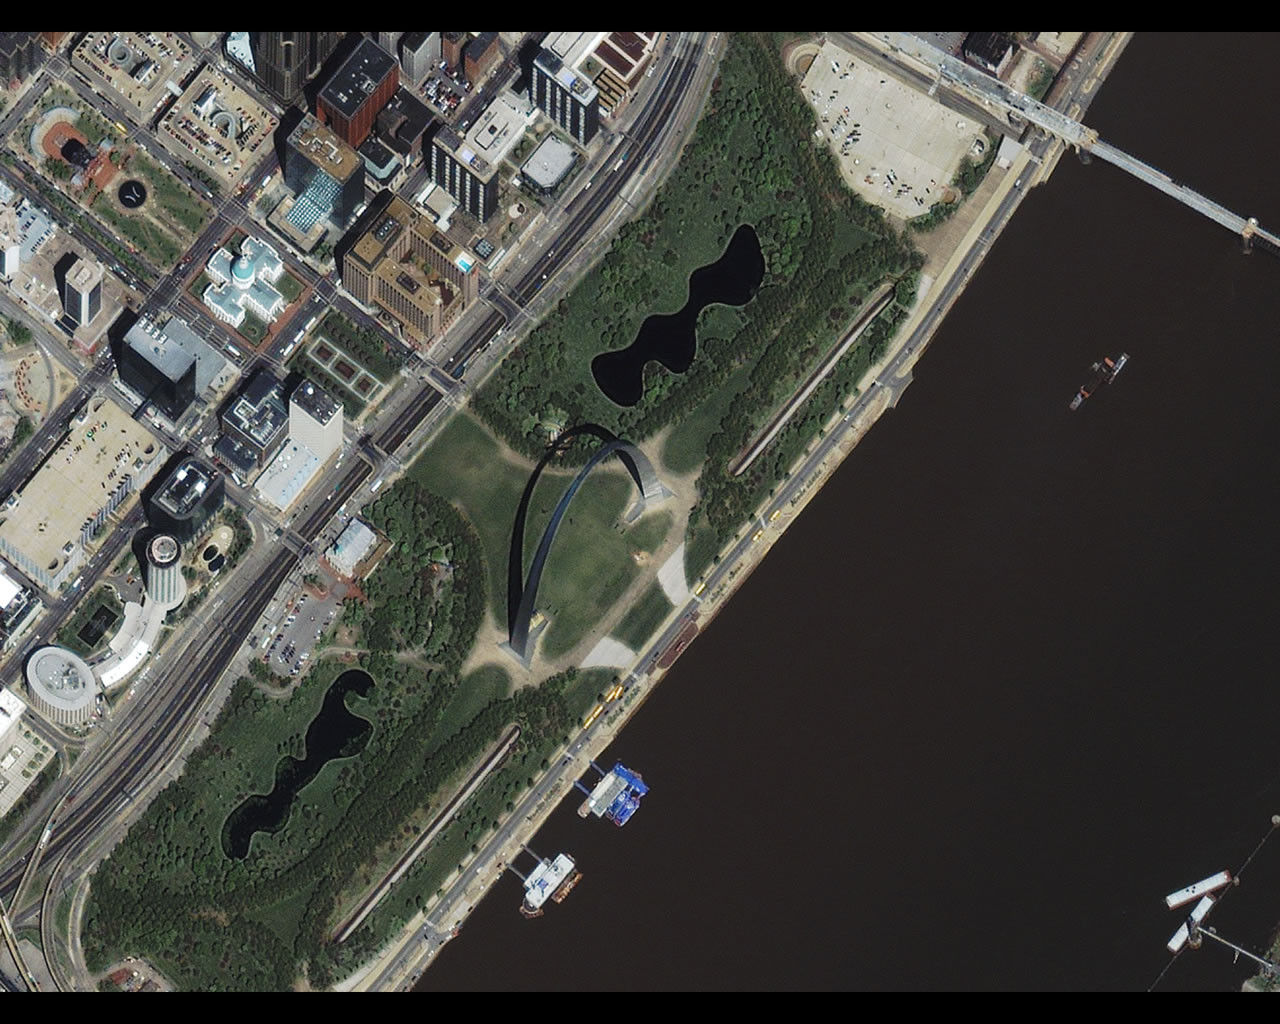 Image satellite de Saint-Louis au Missouri